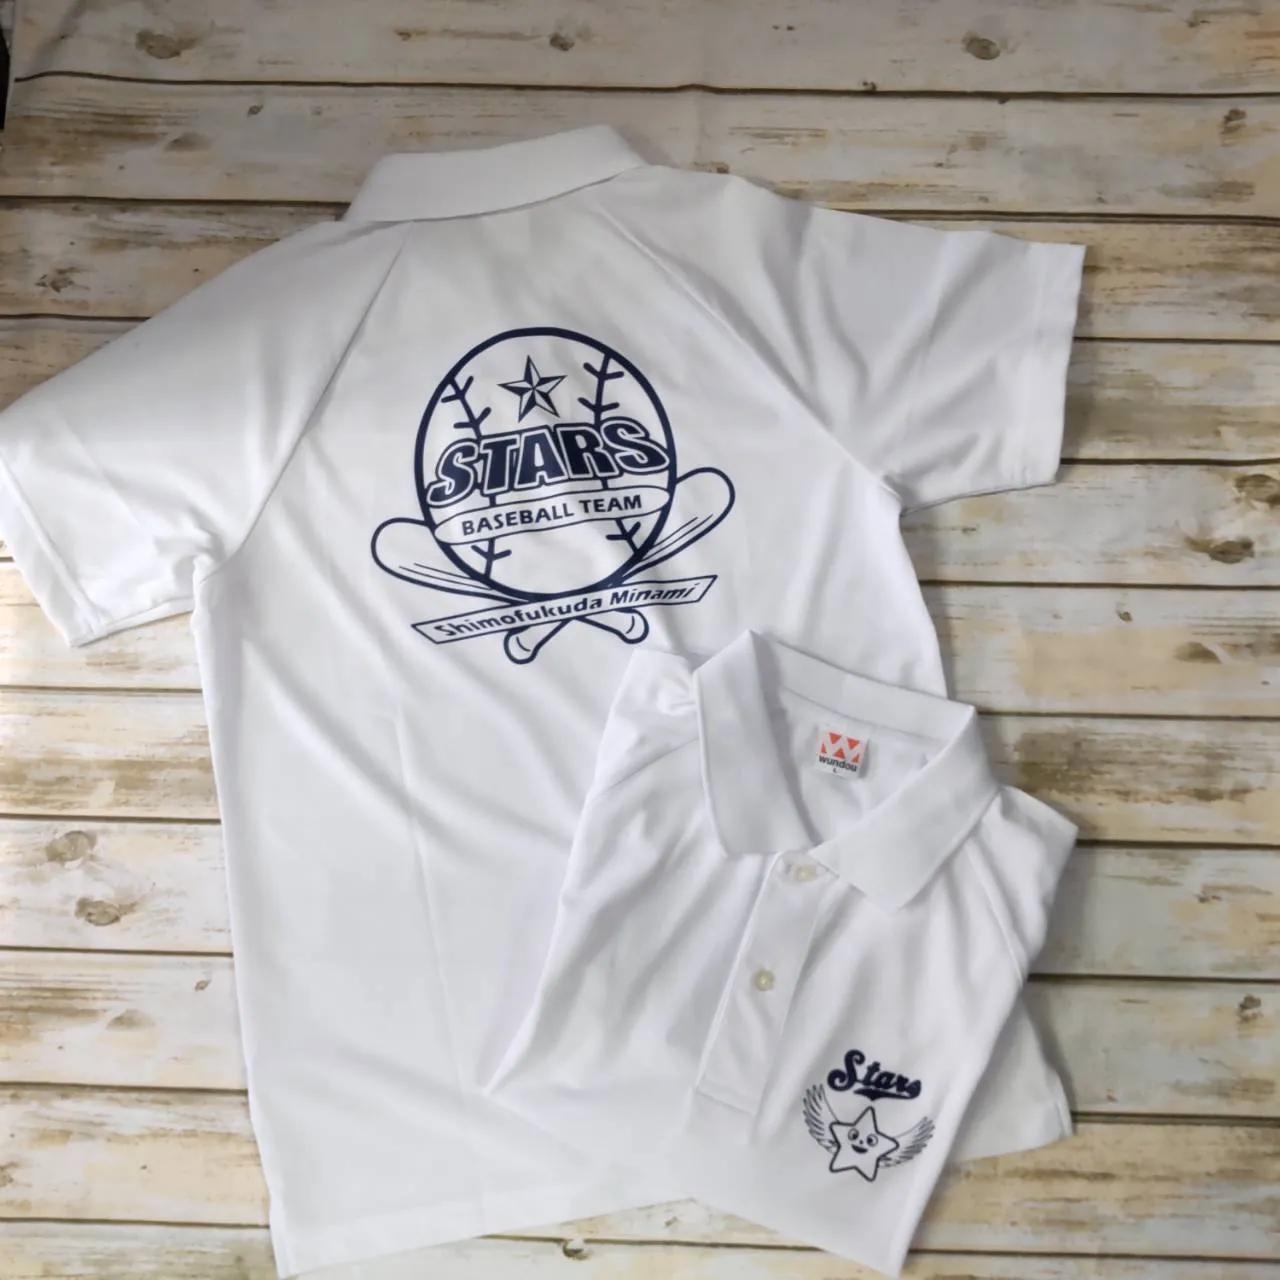 大和市の少年野球チームの応援ポロシャツを作成